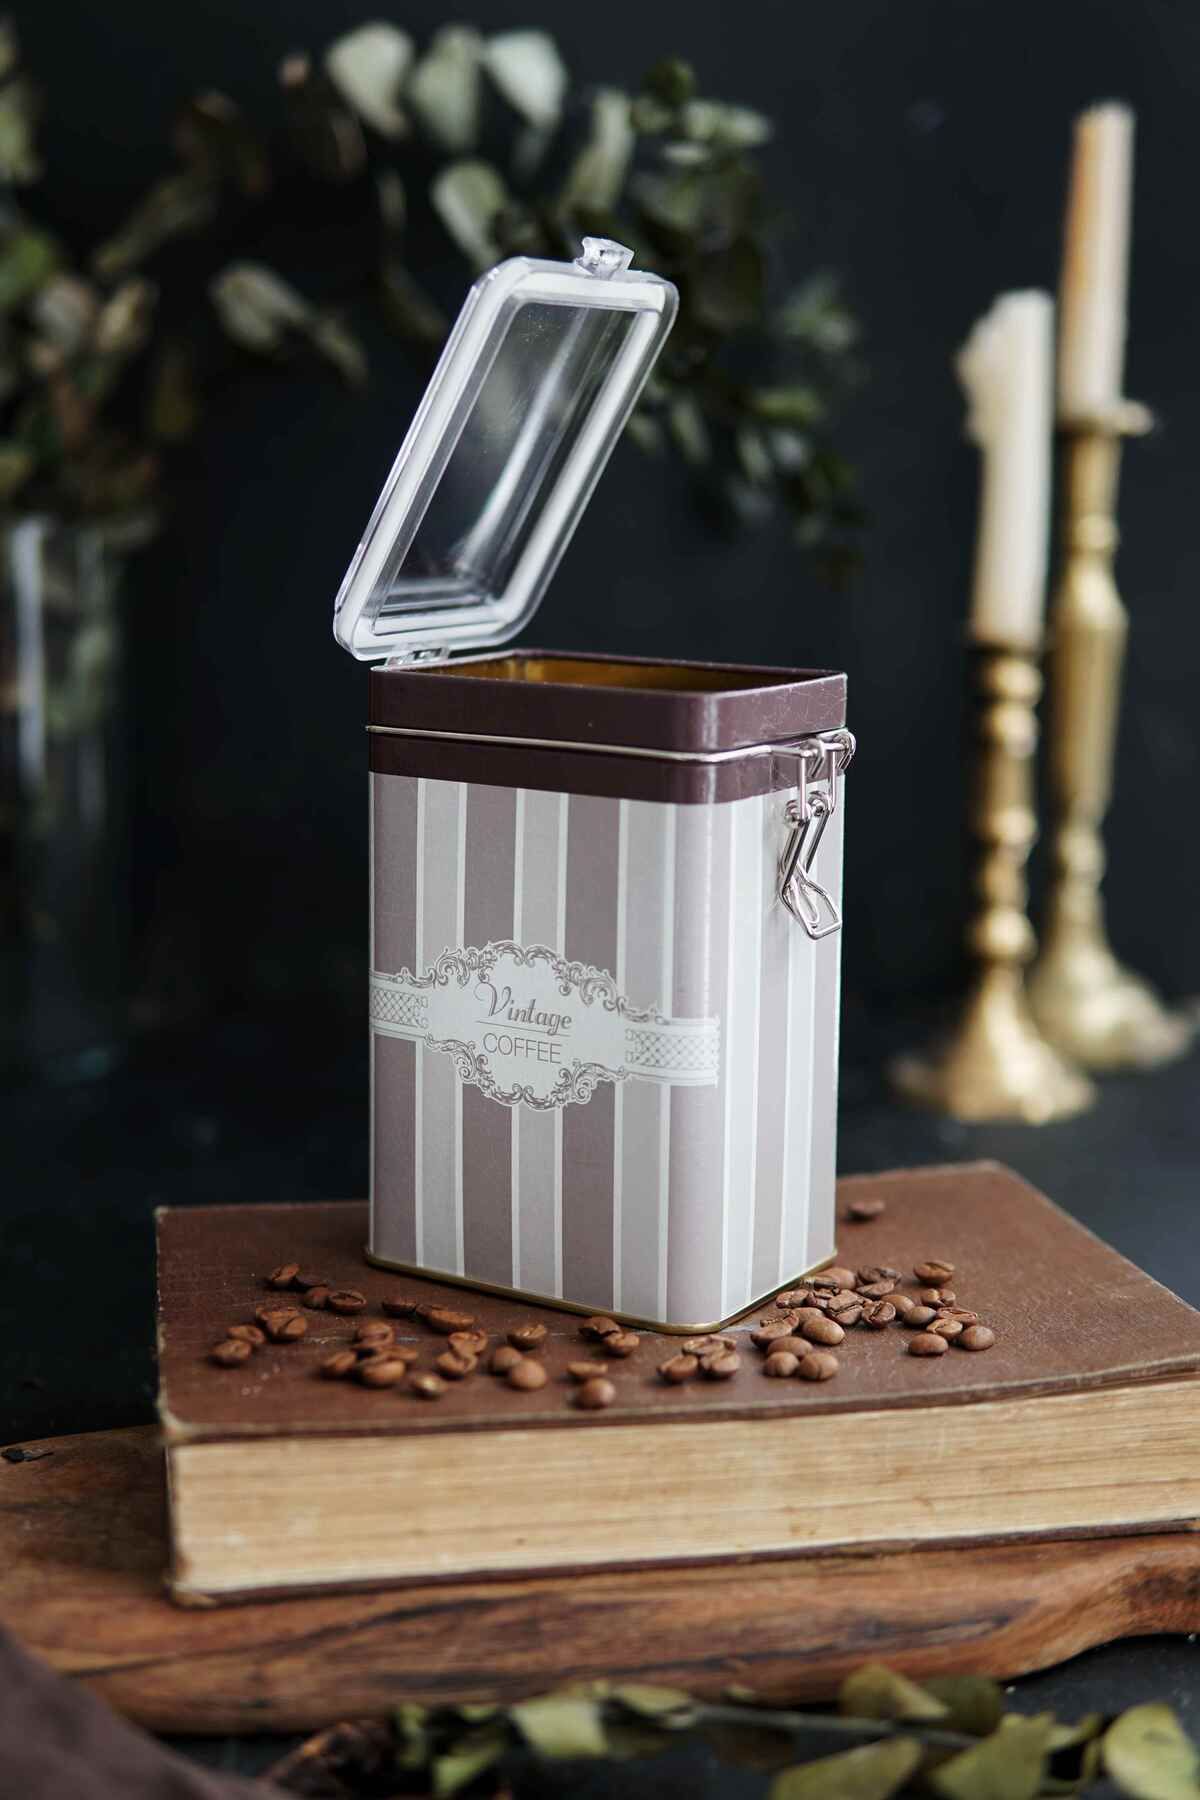 Elegance Coffee Desenli Kilitli Kapaklı Dikdörtgen Metal Kutu, 7.5 x 10 x 15 cm, 1 lt